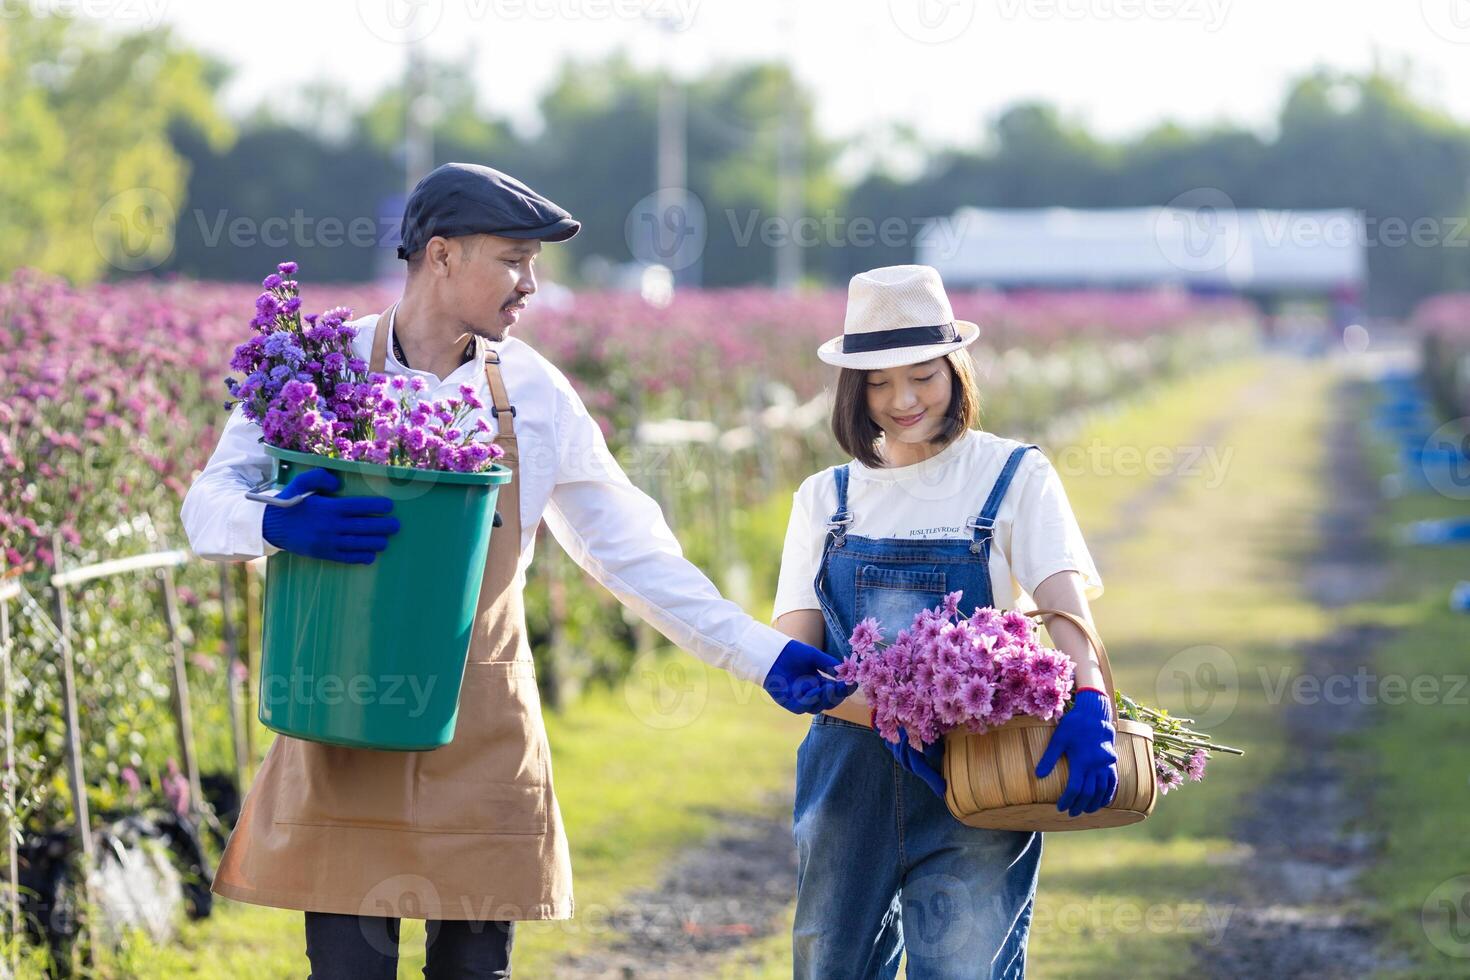 team av asiatisk jordbrukare och blomsterhandlare är arbetssätt i de bruka medan skärande lila krysantemum blomma använder sig av sekatör för skära blomma företag för död- rubrik, odling och skörda säsong foto